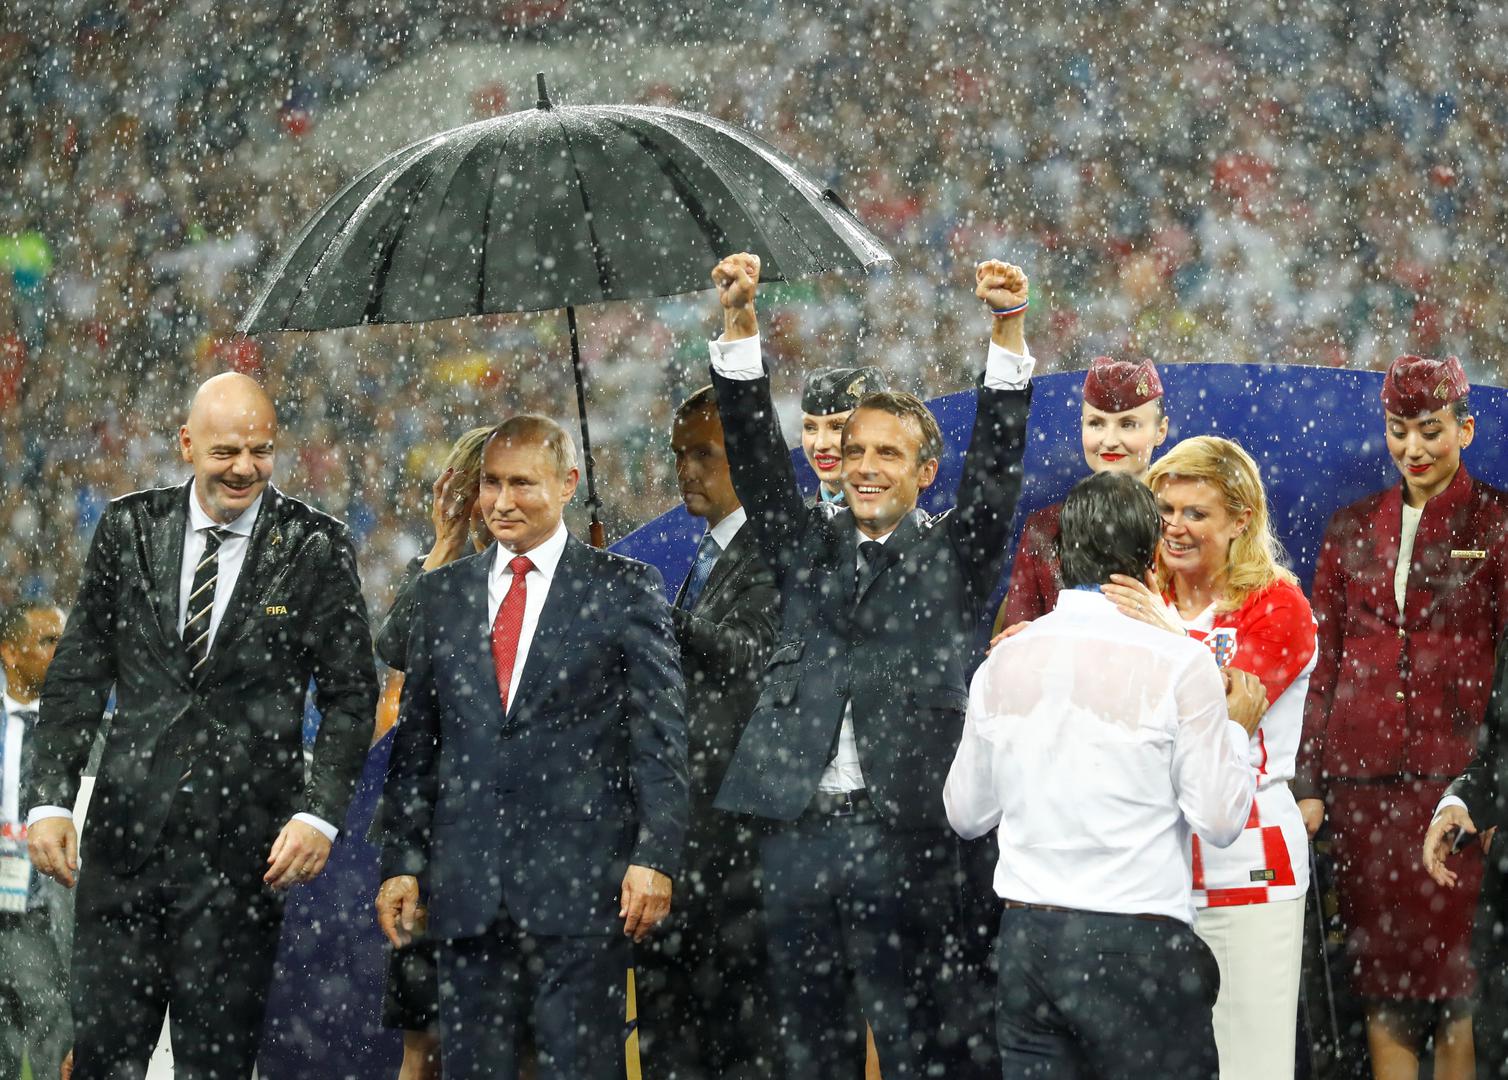 Predsjednica Republike Hrvatske Kolinda Grabar-Kitarović privukla je pozornost na sebe tijekom finala Svjetskog prvenstva.